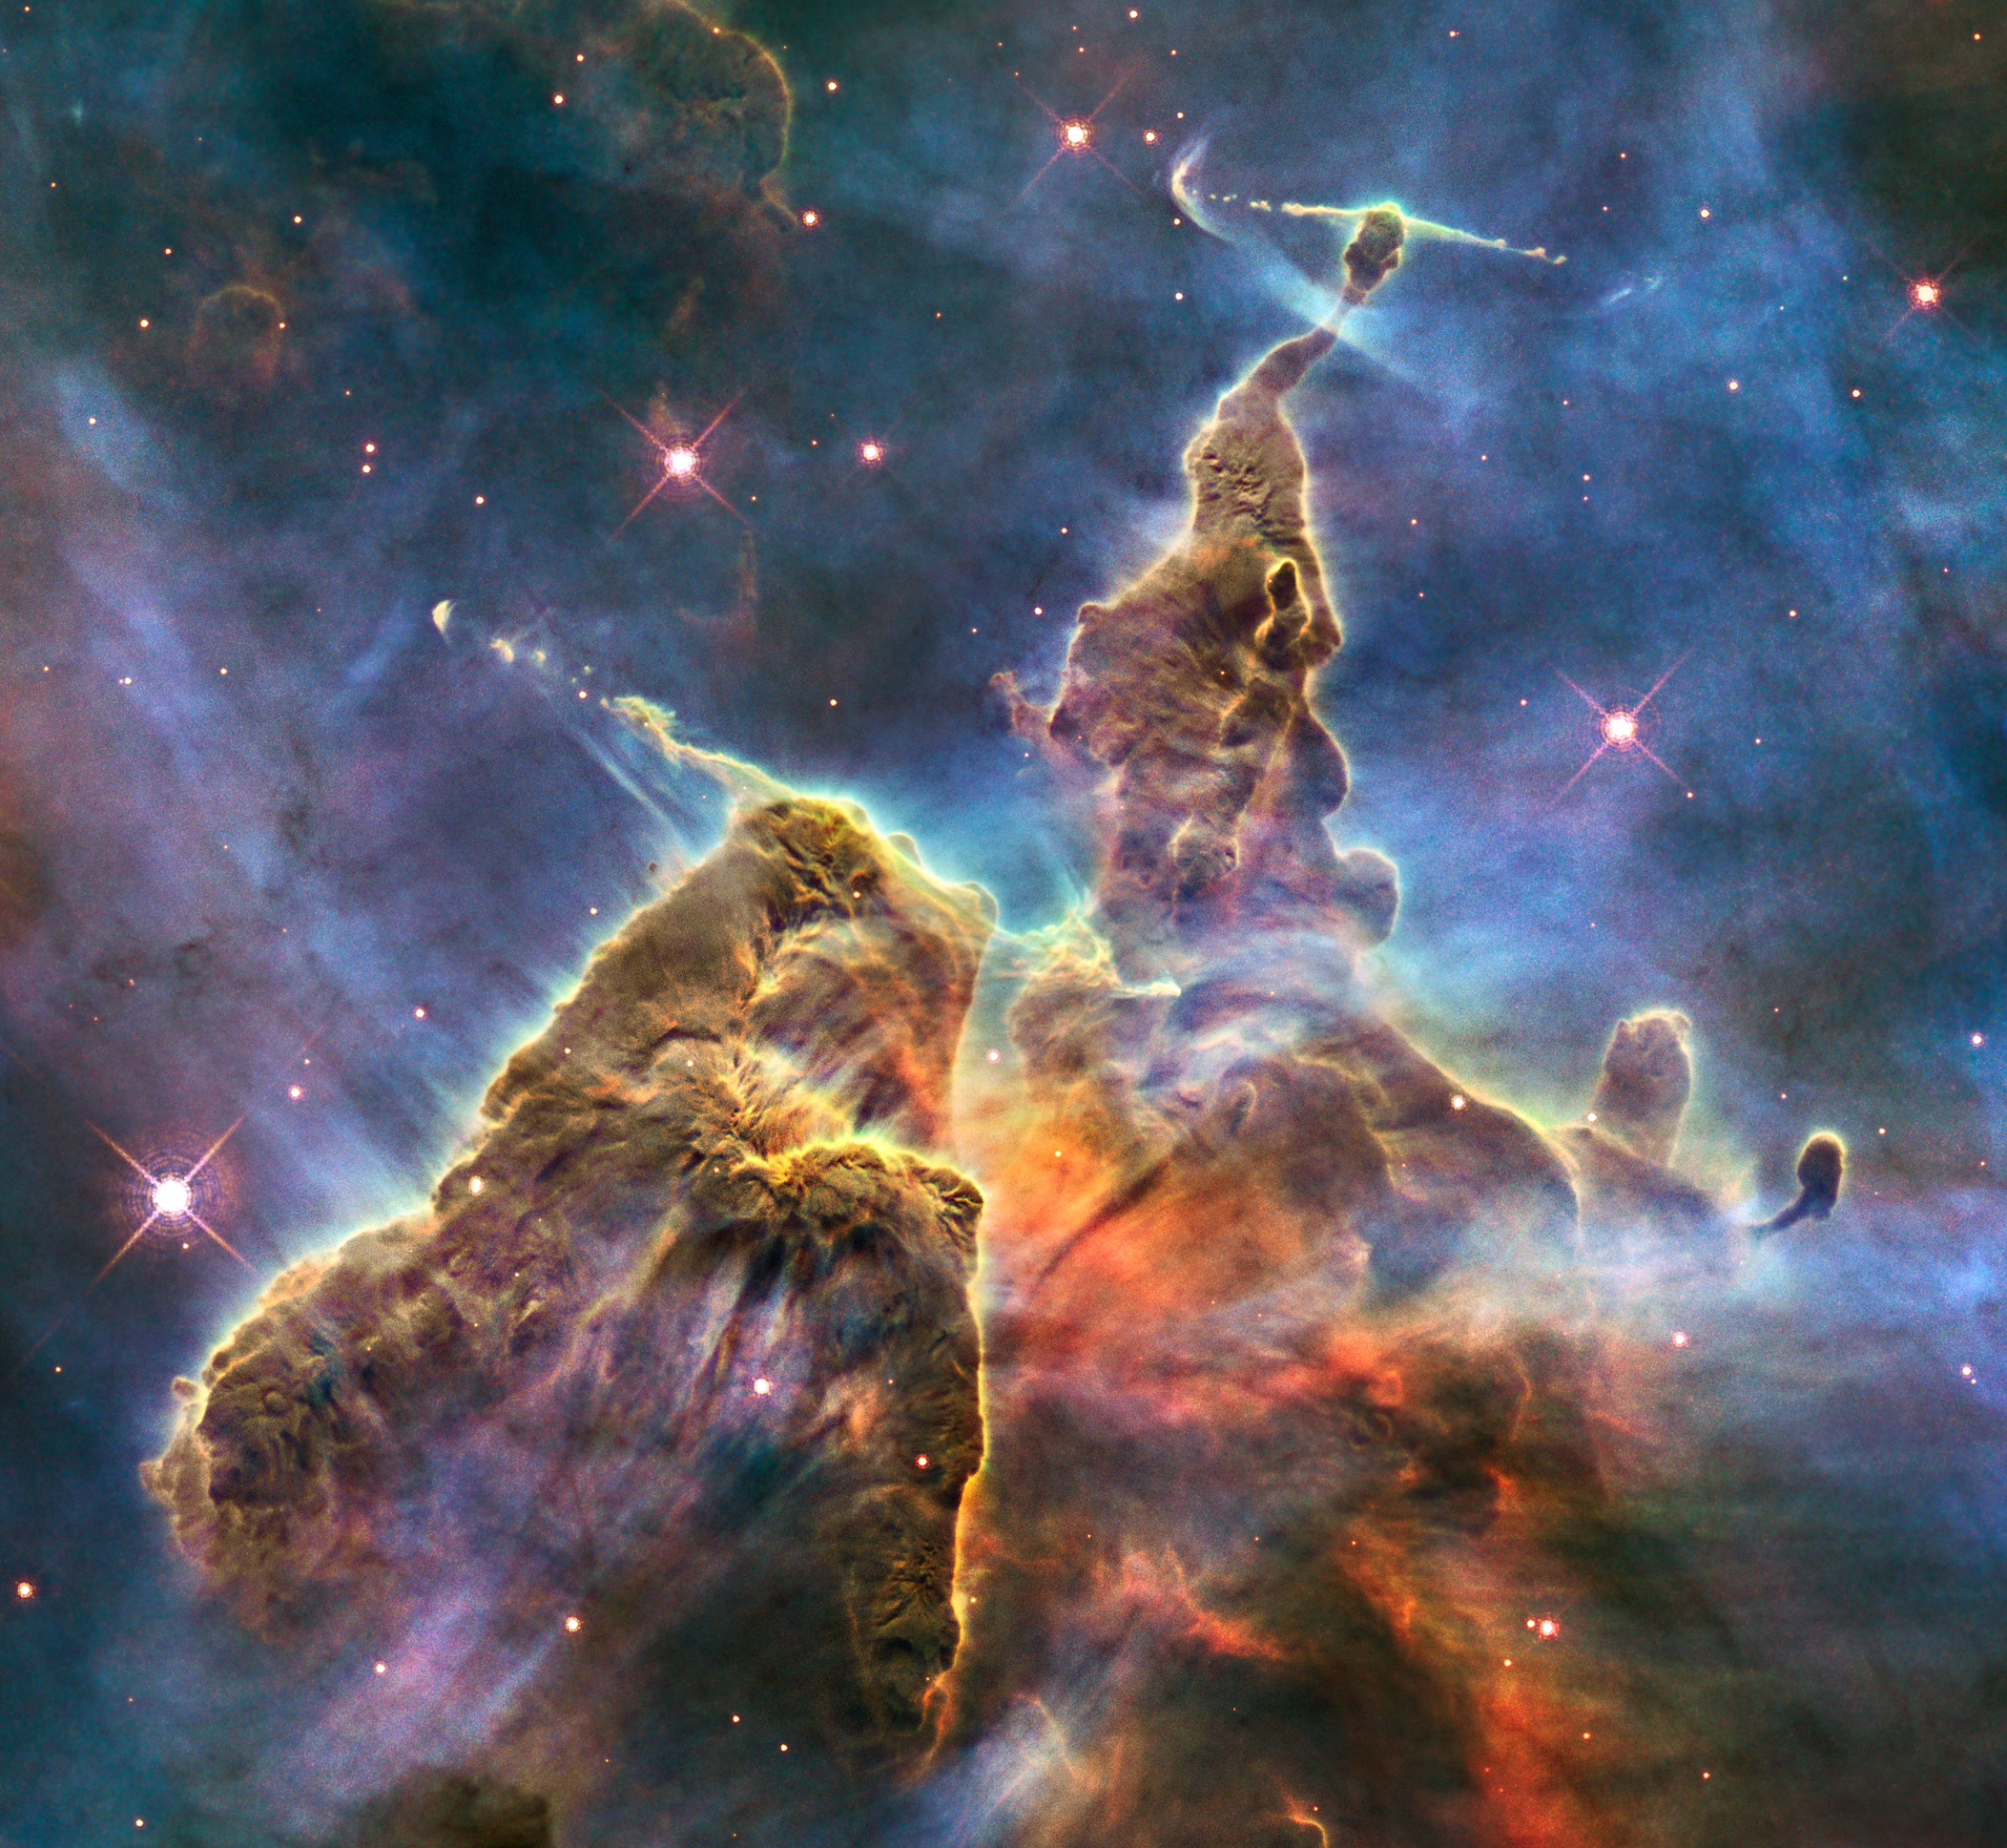 Туманность Карина, расположенная в 7500 световых годах от Земли, представляет собой гигантское облако возрастом 3 миллиона лет, в котором тысячи звёзд проходят циклические стадии звёздной жизни и смерти. Ширина туманности составляет 300 световых лет